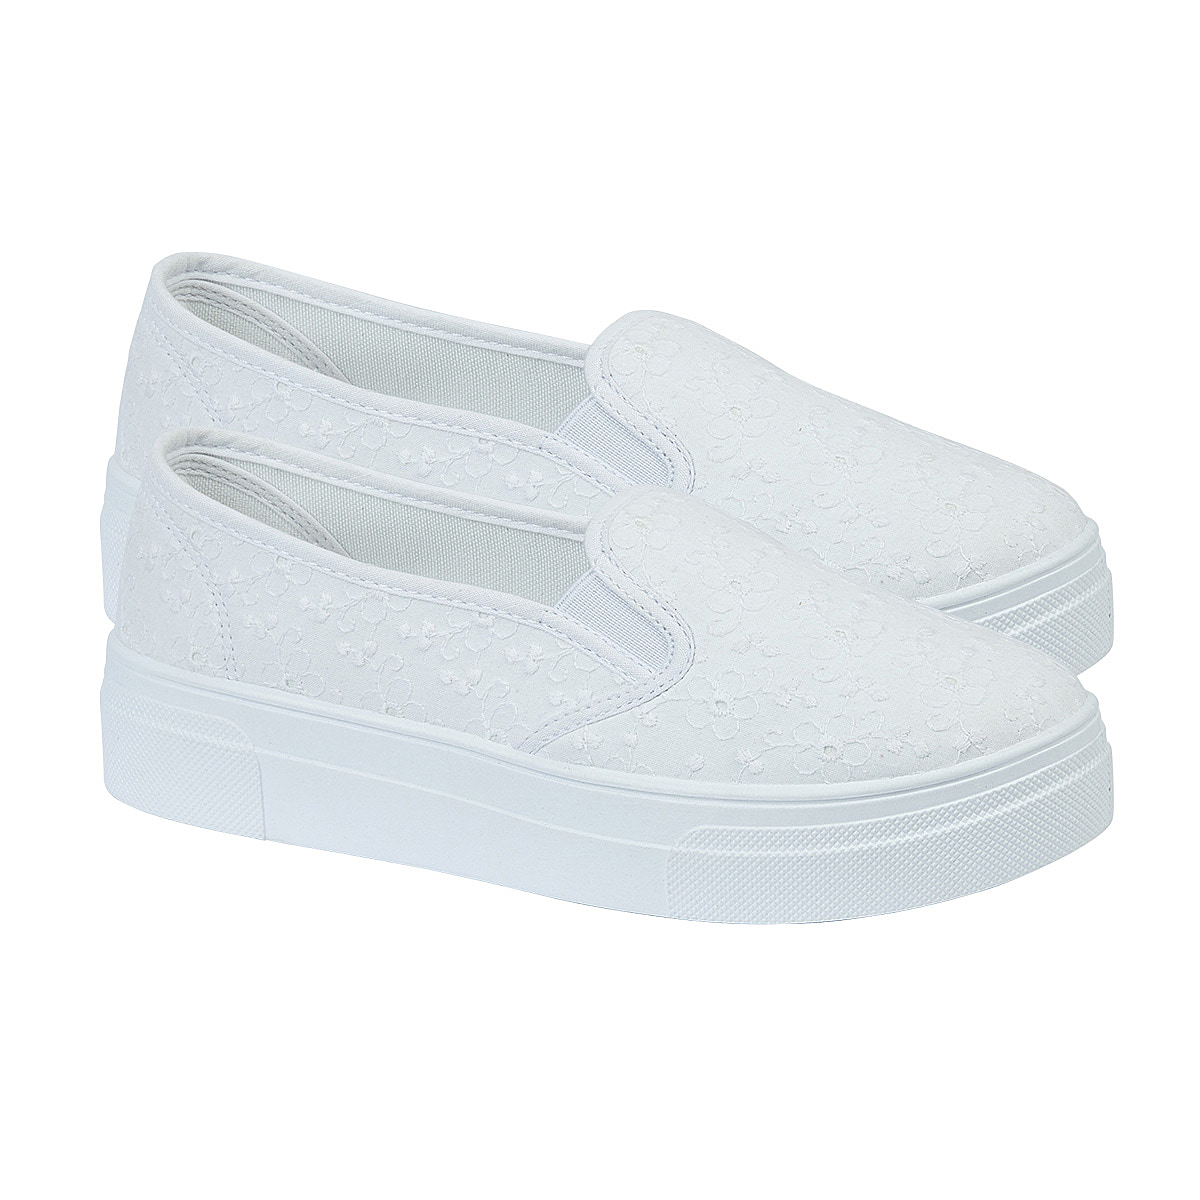 Ladies-Shoe-Size-3-White